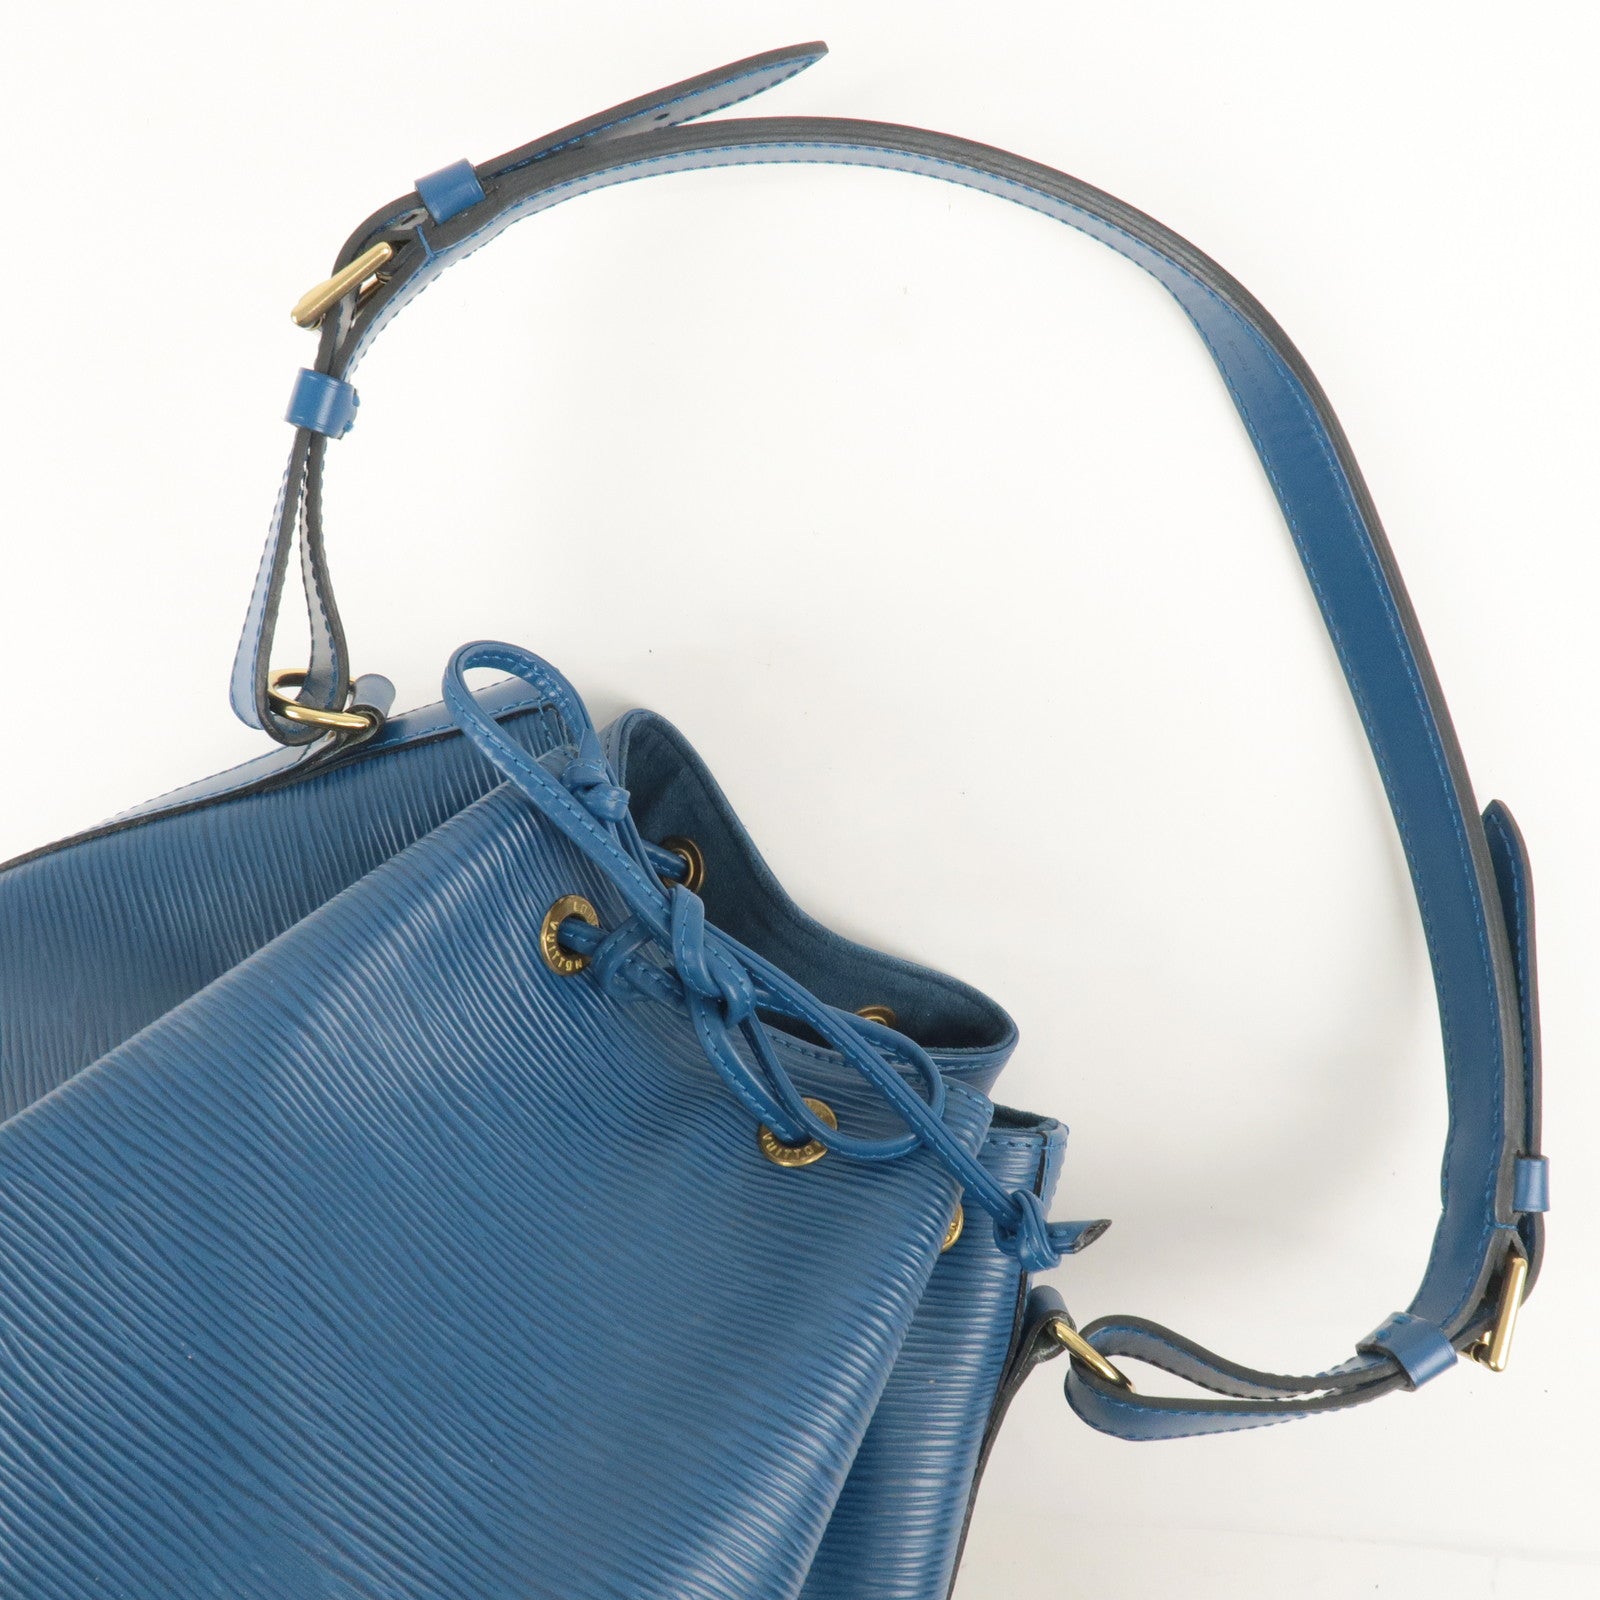 Louis Vuitton EPI Bucket Drawstring Bag